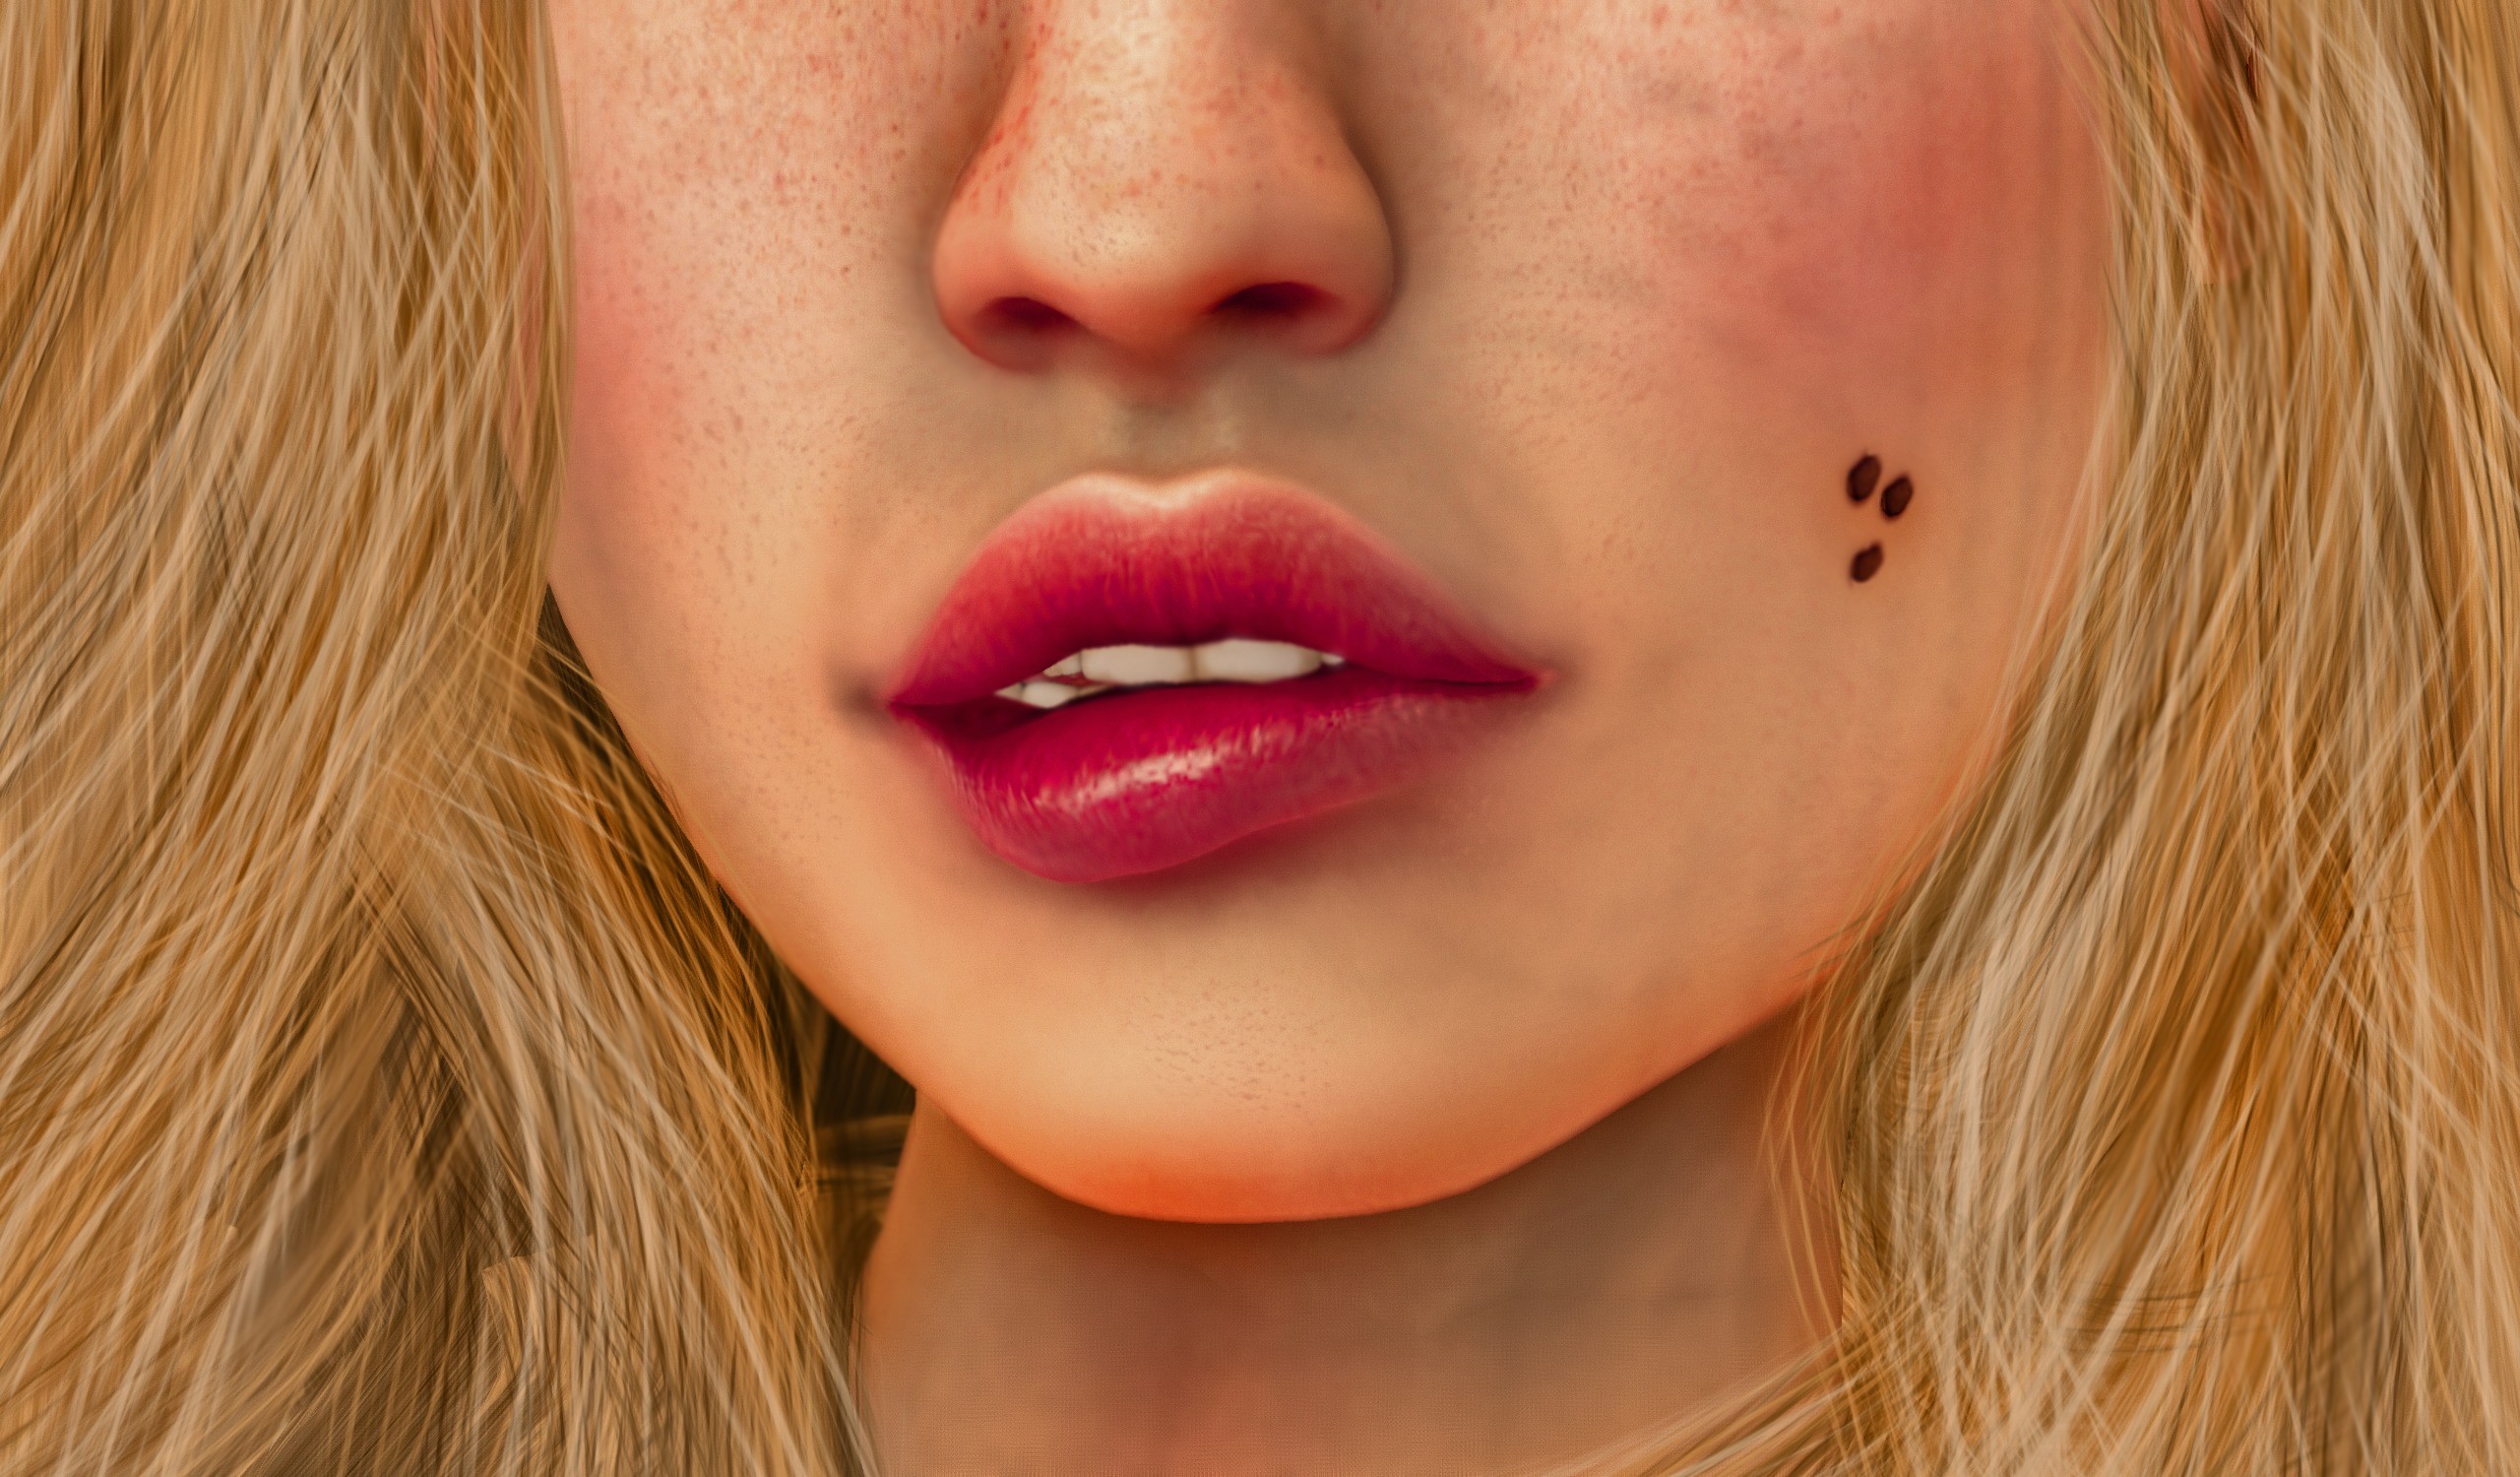 General 2560x1500 lips face women artwork biting lips digital art closeup eyes hidden